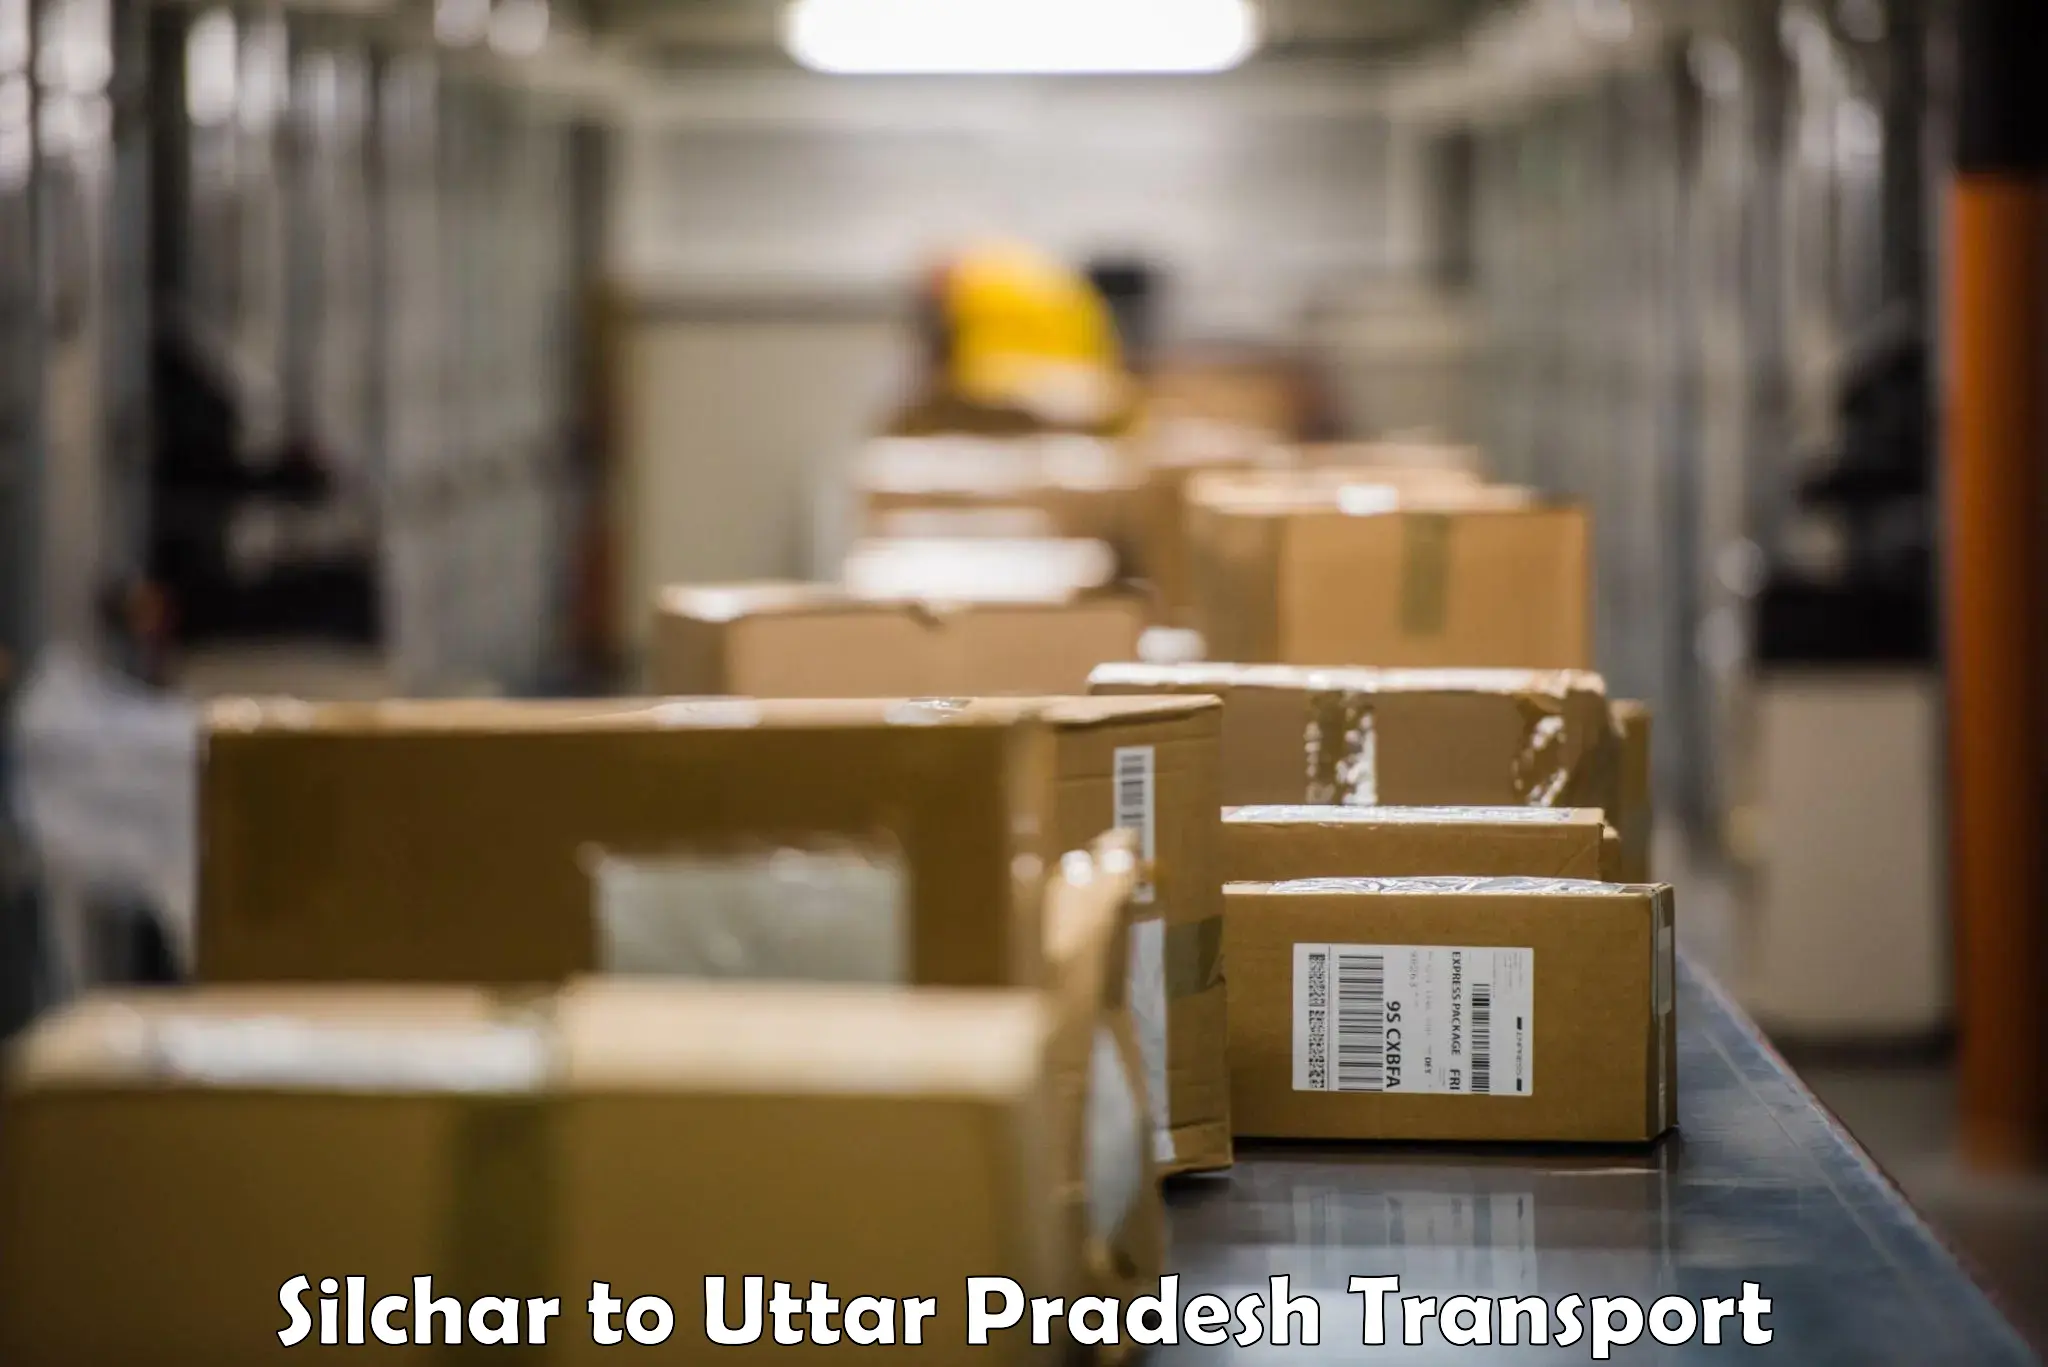 Transport in sharing Silchar to Domariyaganj